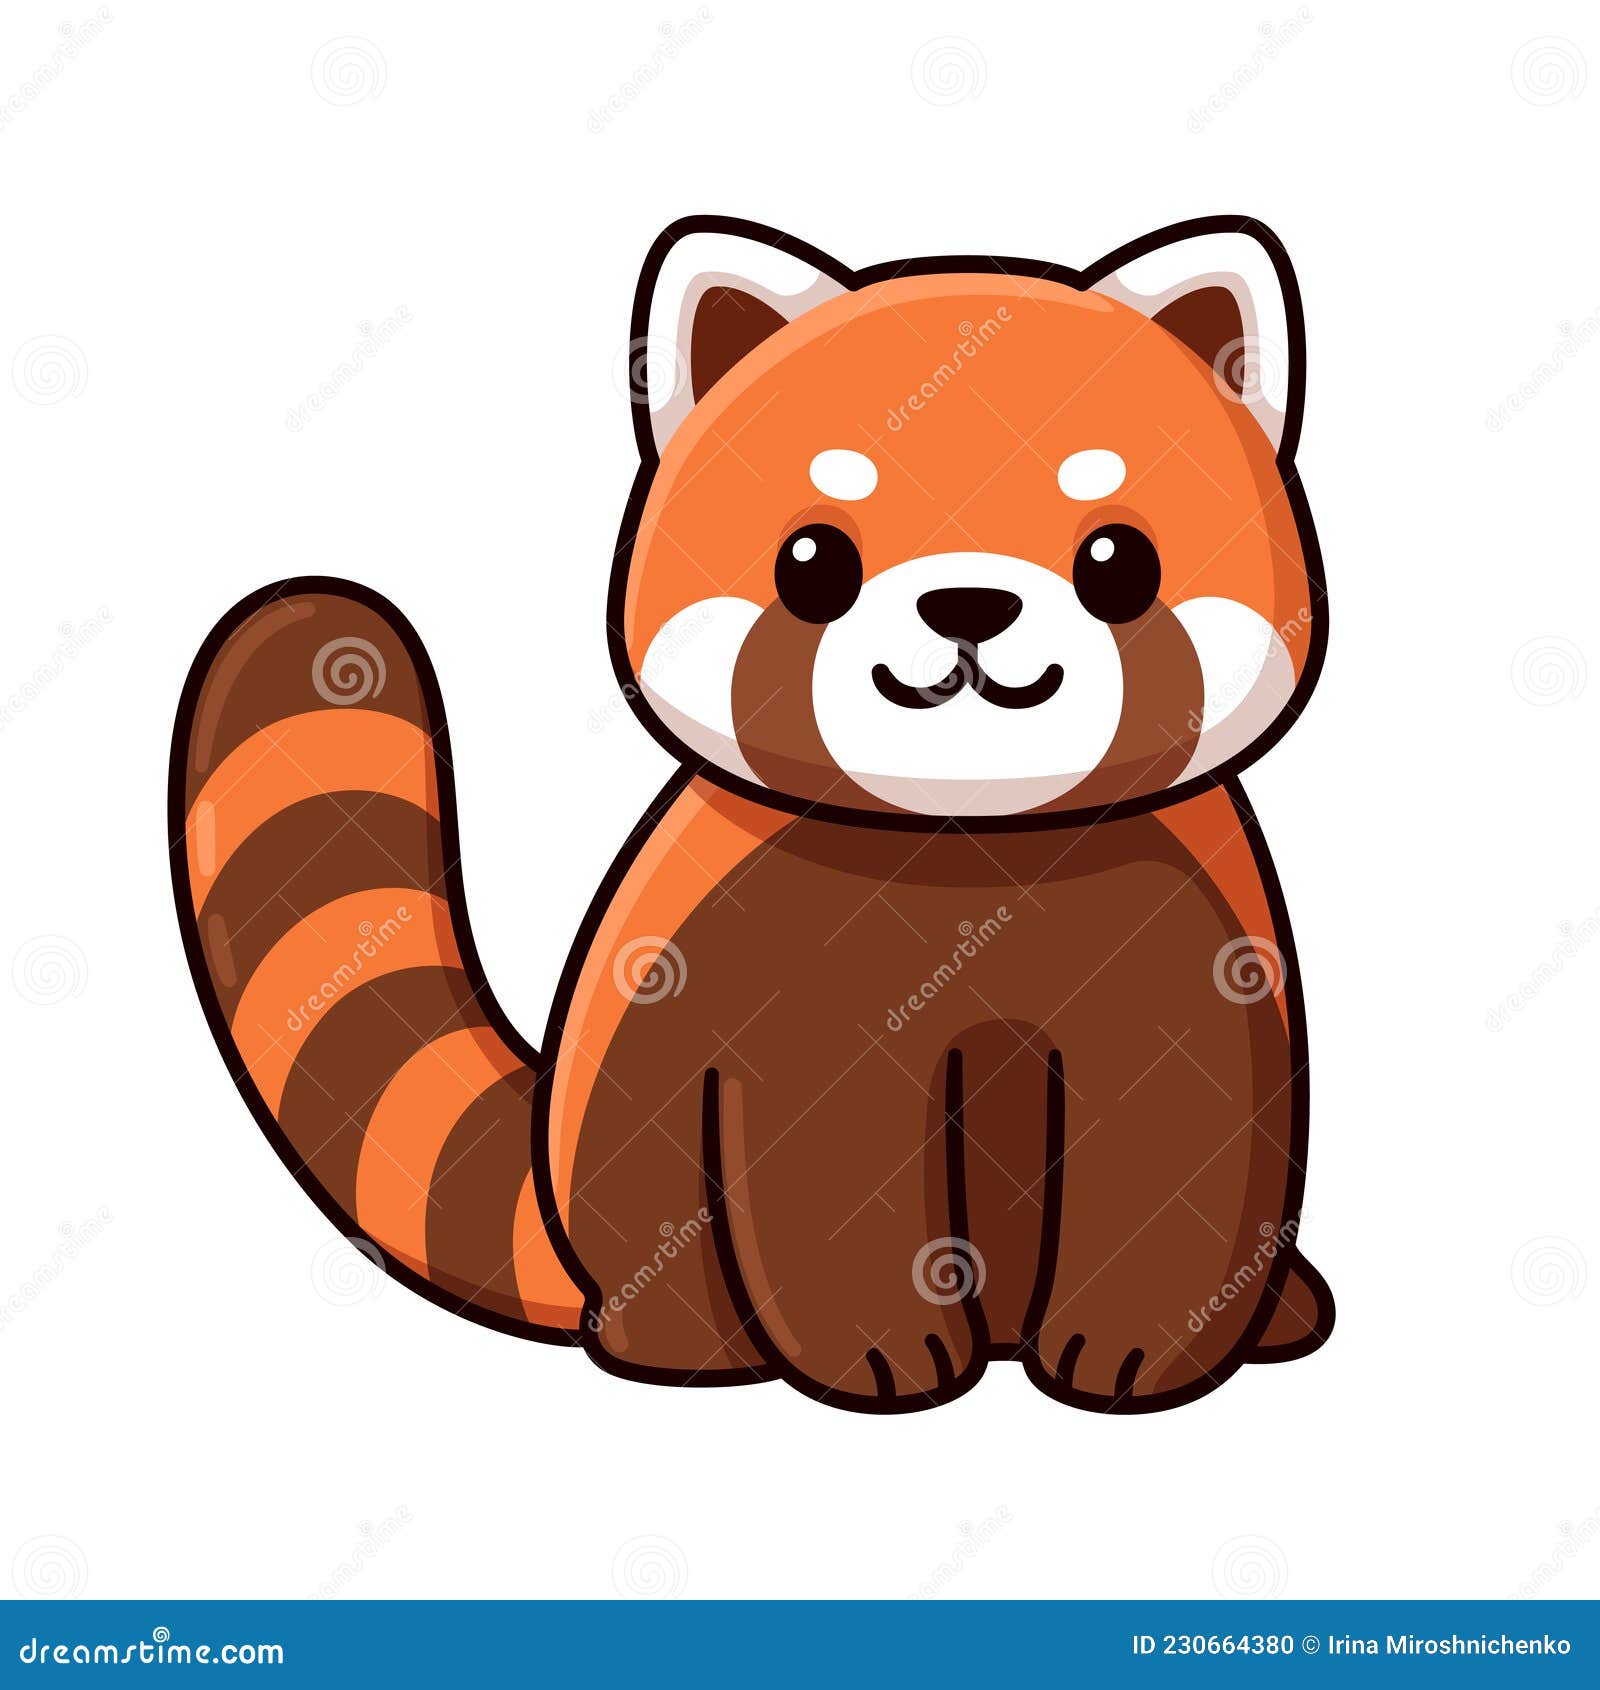 cute cartoon red panda